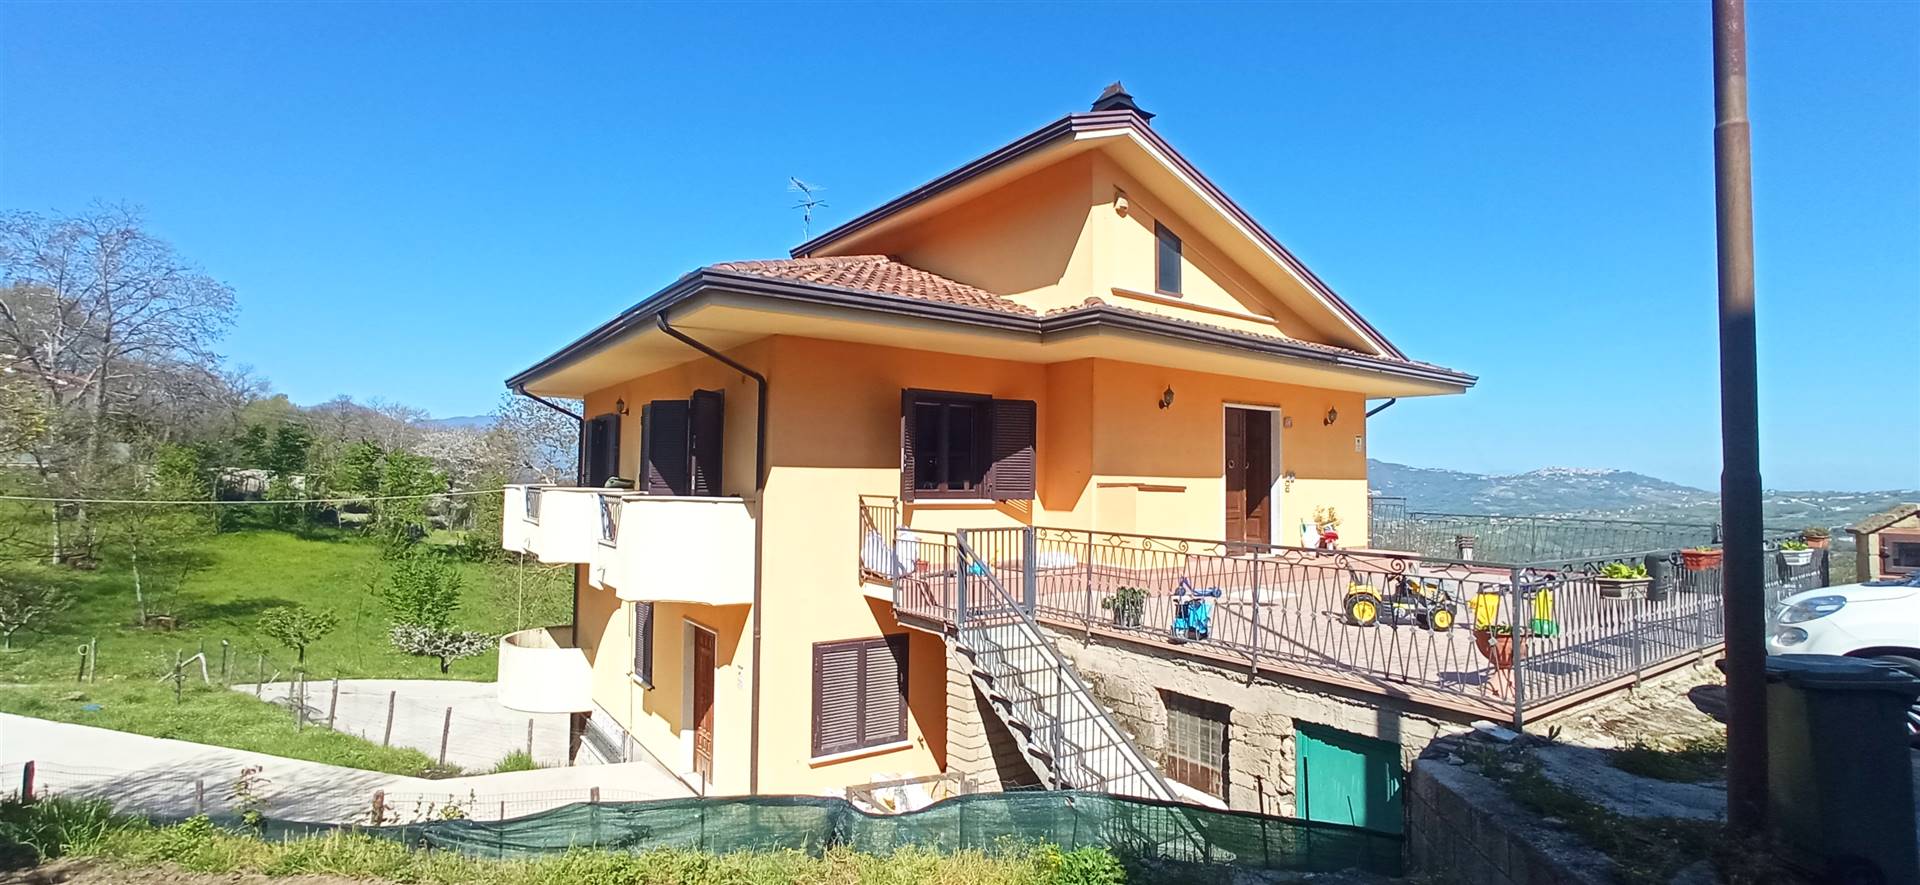 Villa in vendita a Montefalcione, 8 locali, zona Zona: Castelrotto, prezzo € 206.000 | CambioCasa.it